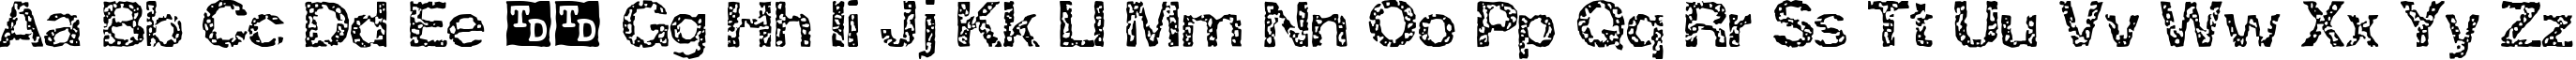 Пример написания английского алфавита шрифтом ZRex Trial Version